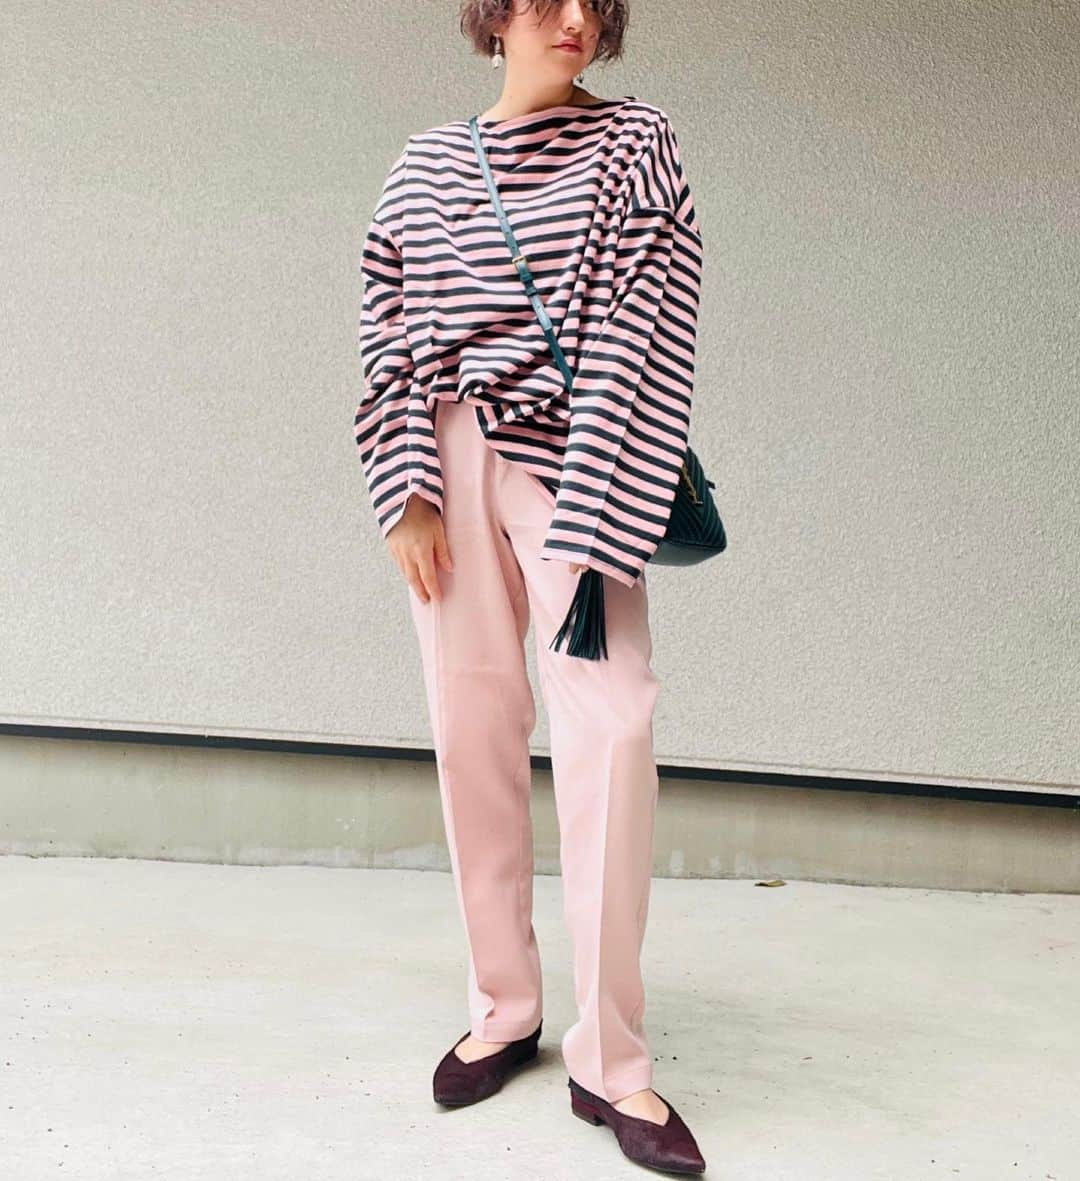 nakiのインスタグラム：「可愛いイメージのピンクを masculine要素の多い 私の顔立ちに合うように 直線的なデザインを取り入れる事で色のイメージと顔のイメージをマッチさせてます。 ・ ・ ・ #アラフォーコーデ #アラフォーファッション #ピンクコーデ #カジュアル#カジュアルファッション #大人カジュアル」